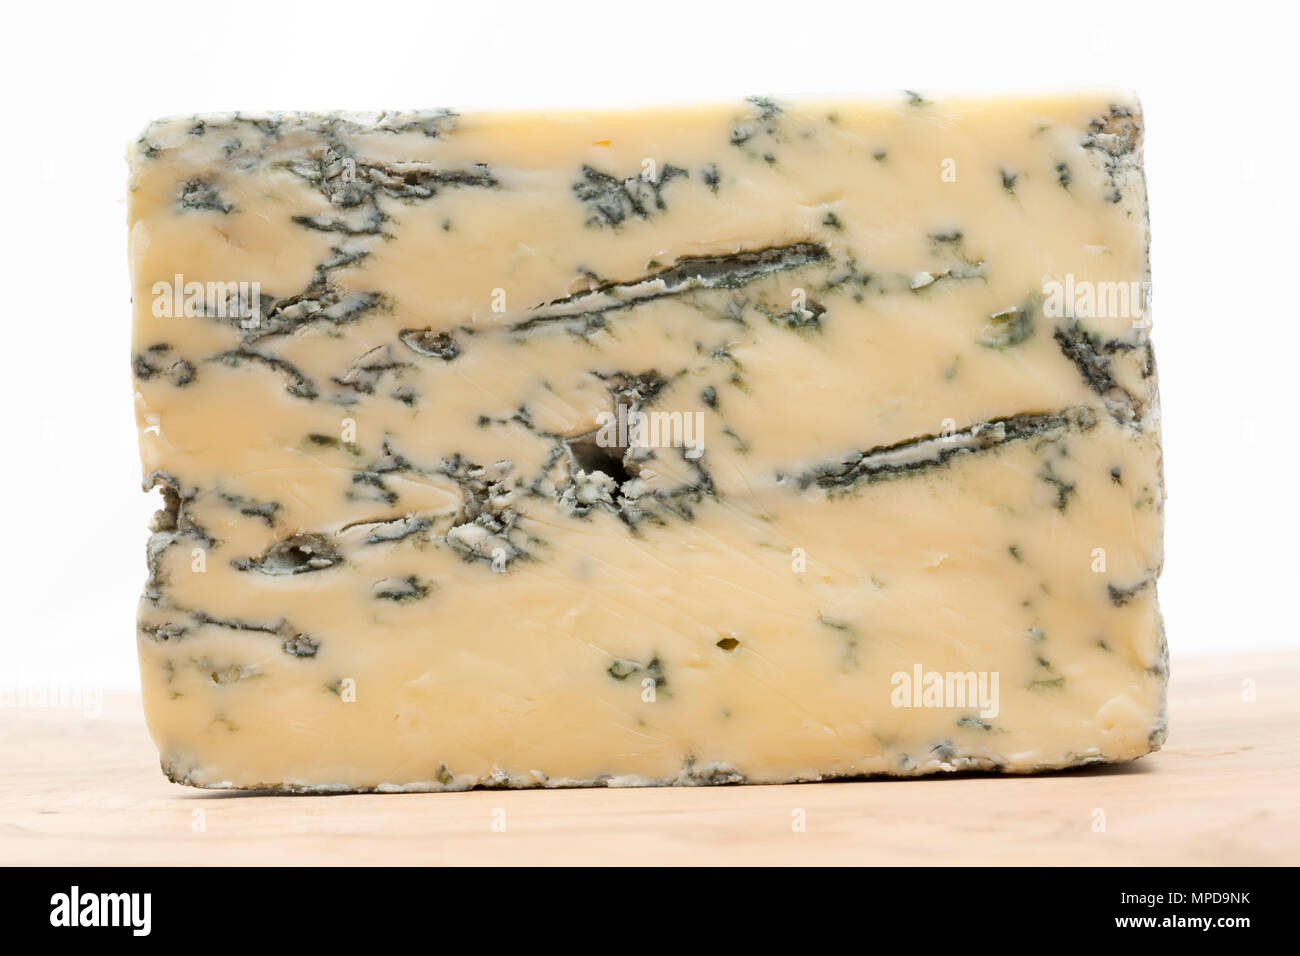 Un cuneo di pastori portamonete blu dello Yorkshire formaggio di latte di vacca ha acquistato da un supermercato nel Regno Unito. Inghilterra REGNO UNITO GB Foto Stock